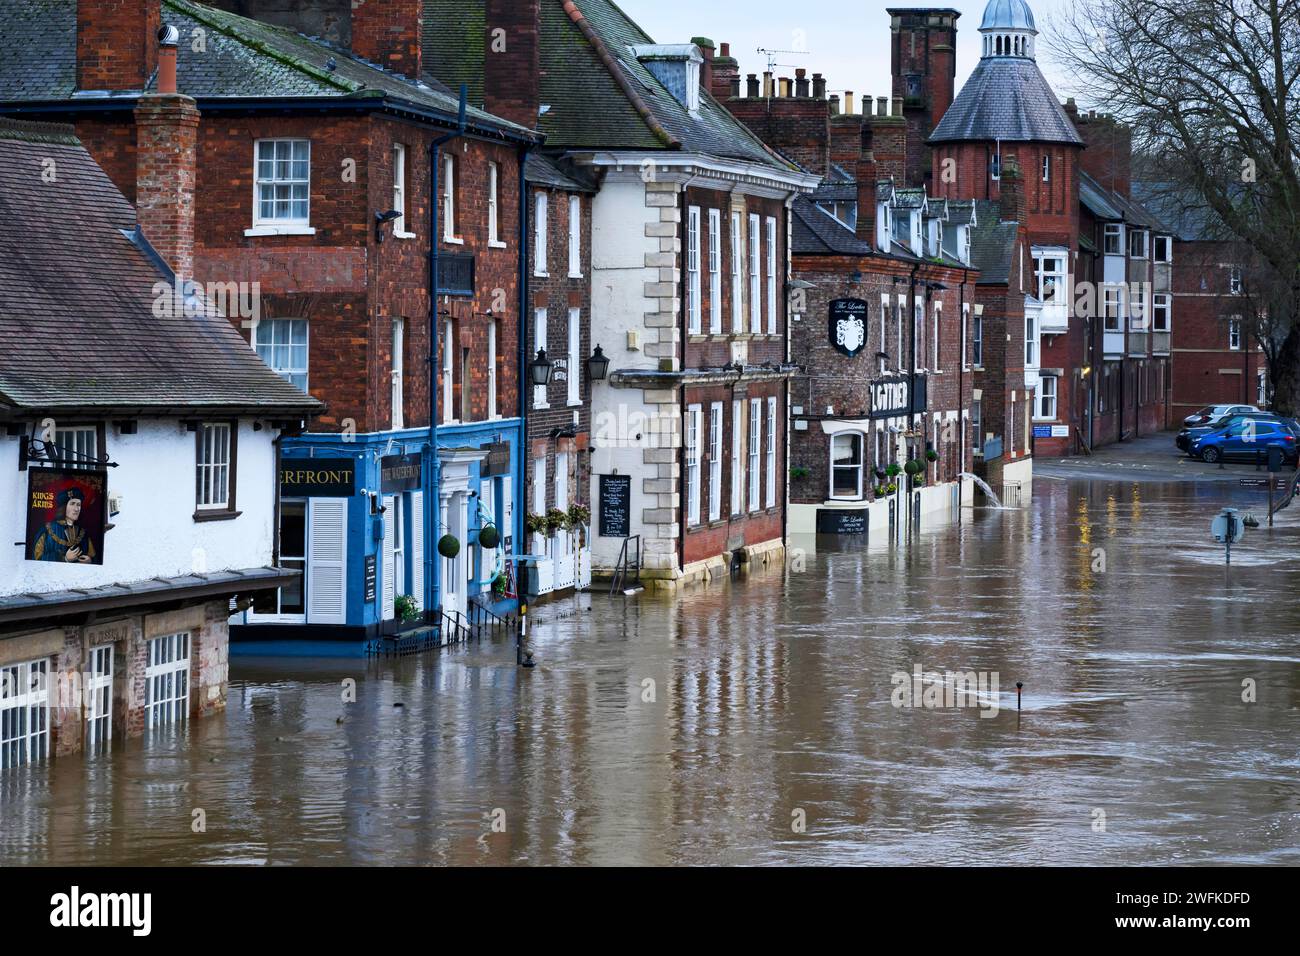 Il fiume Ouse scoppiò le rive dopo una forte pioggia (strada lungo il fiume sommersa da un'elevata inondazione d'acqua, locali dei pub allagati) - York, North Yorkshire, Inghilterra, Regno Unito. Foto Stock